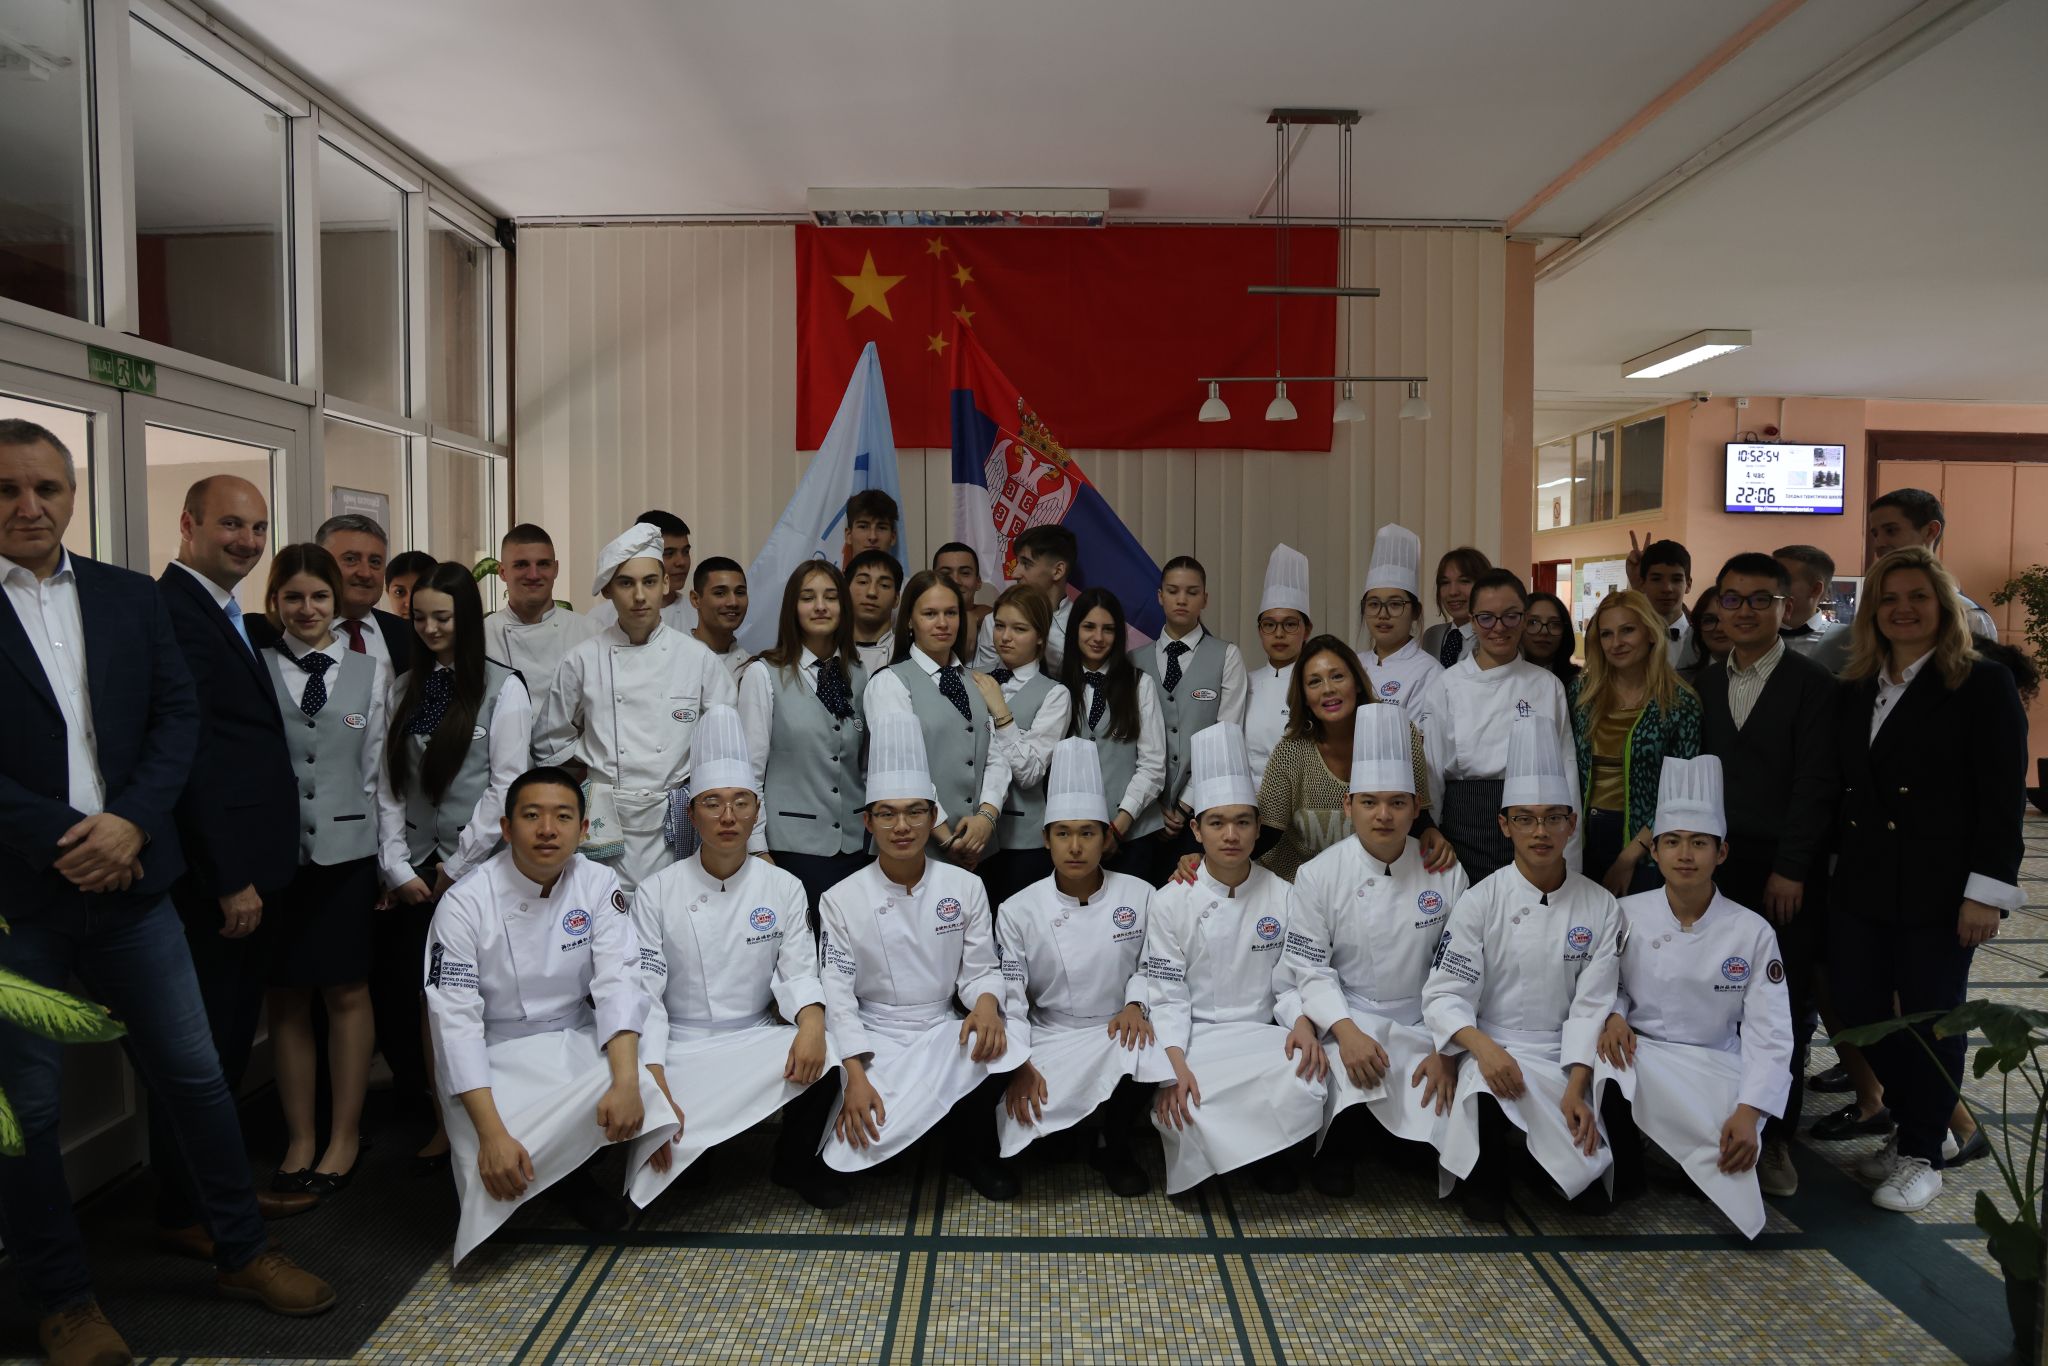 塞尔维亚鲁班工坊赴塞高中开展中式烹饪交流活动